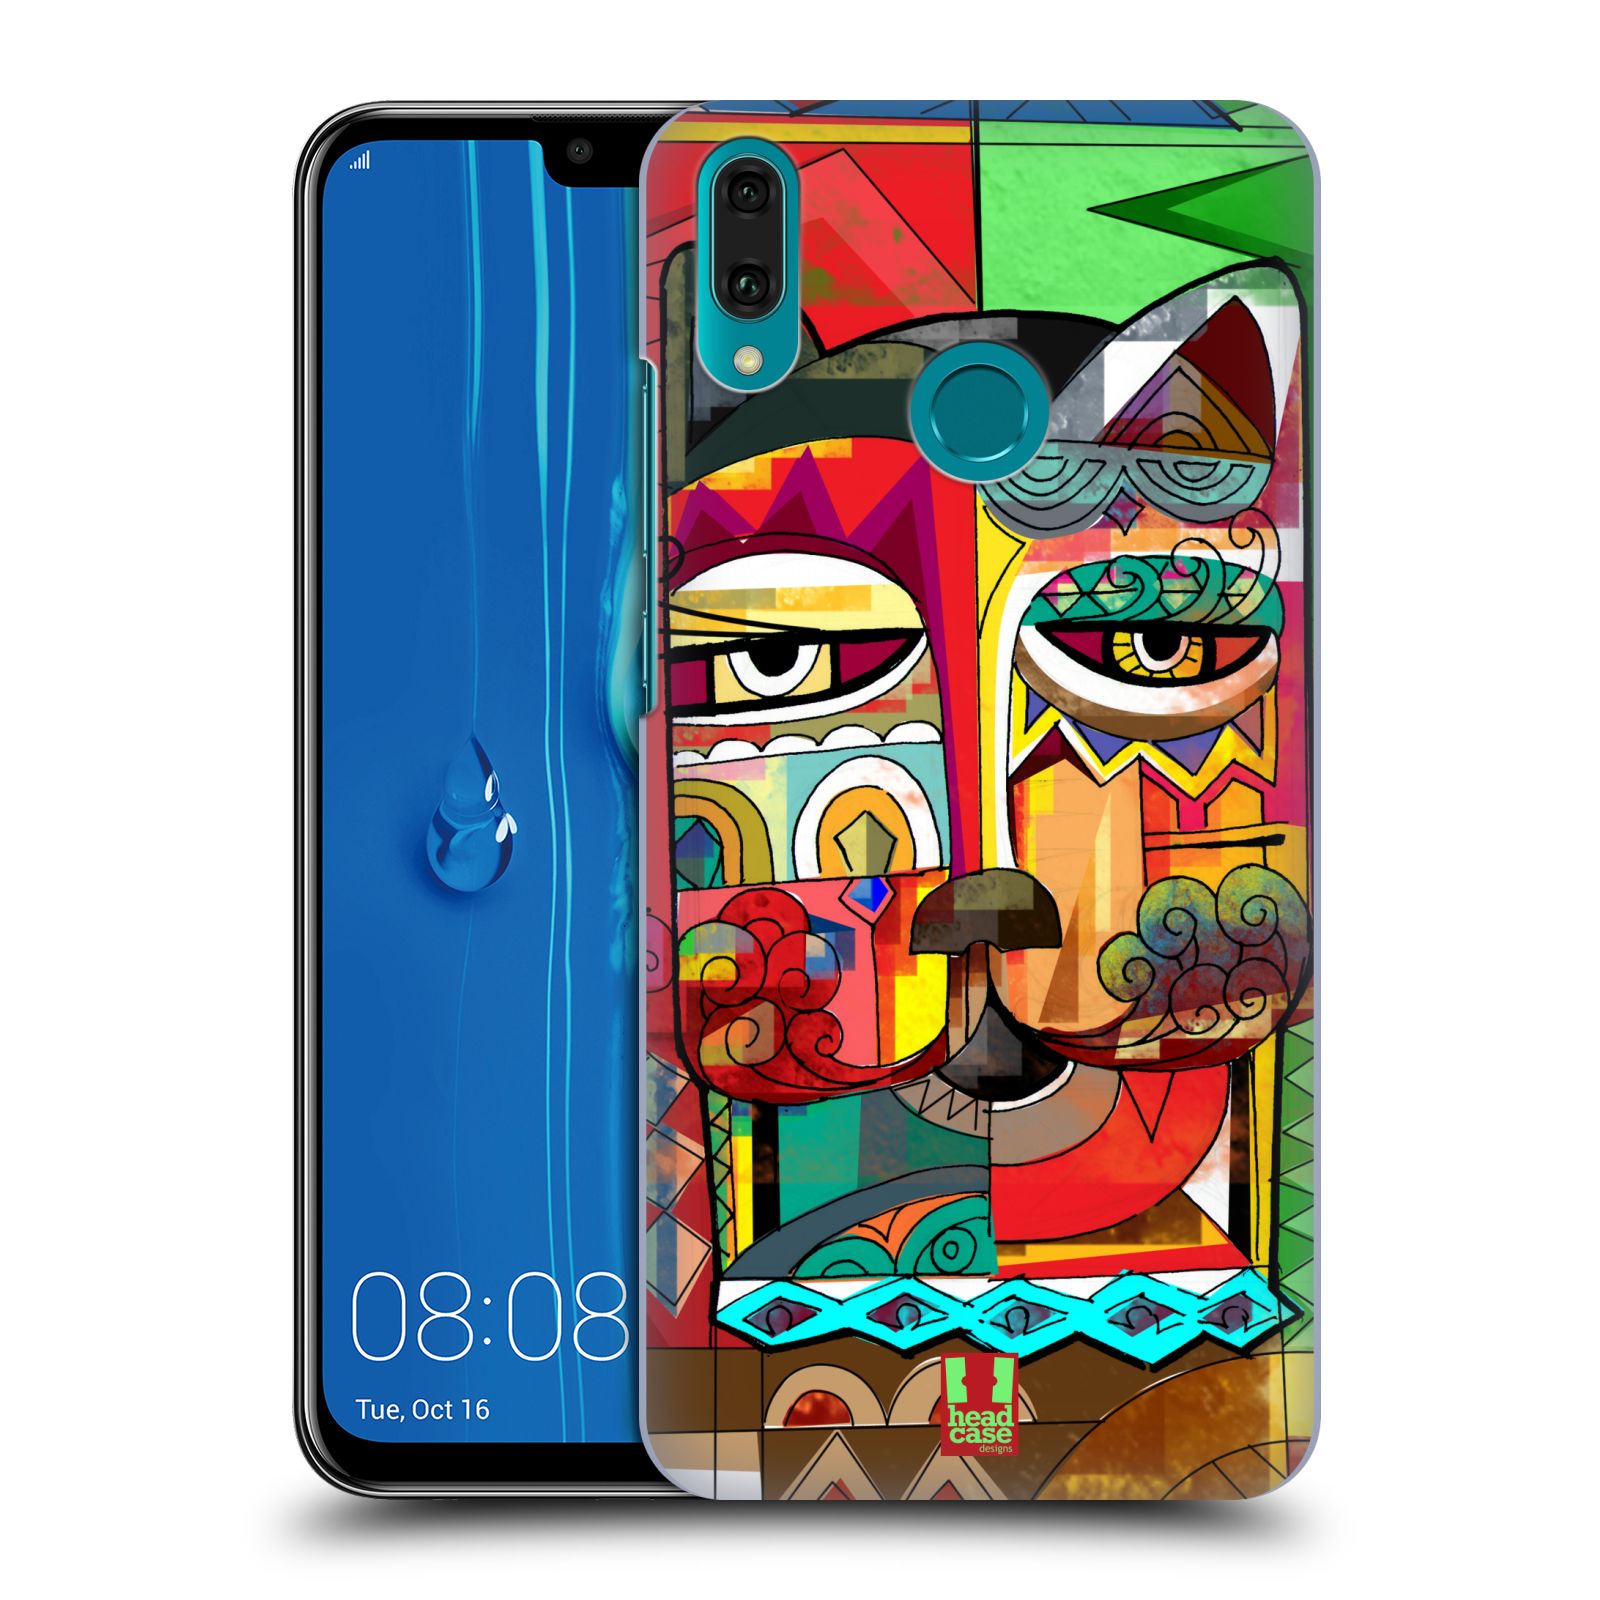 Pouzdro na mobil Huawei Y9 2019 - HEAD CASE - vzor Aztécký vzor abstrakce kočka SPHYNX